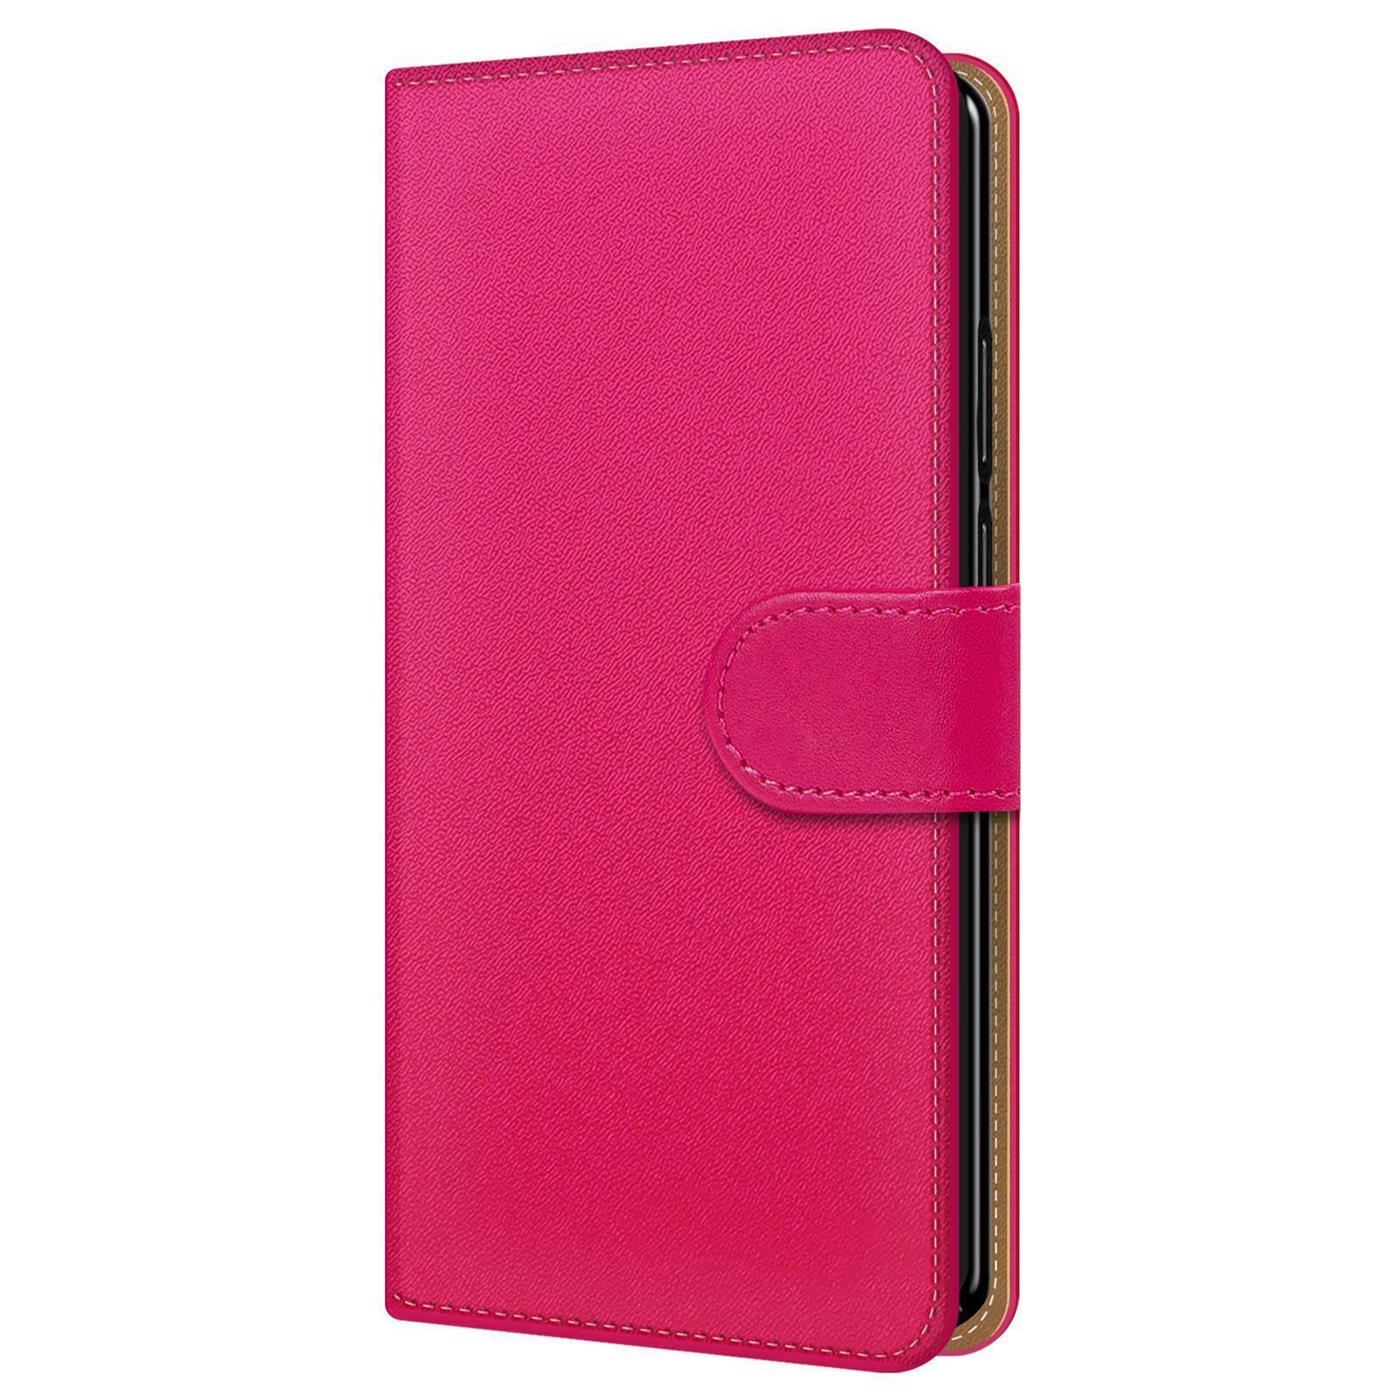 Indexbild 24 - Schutzhülle für Samsung Galaxy Handy Tasche Slim Flip Case Book Cover Wallet